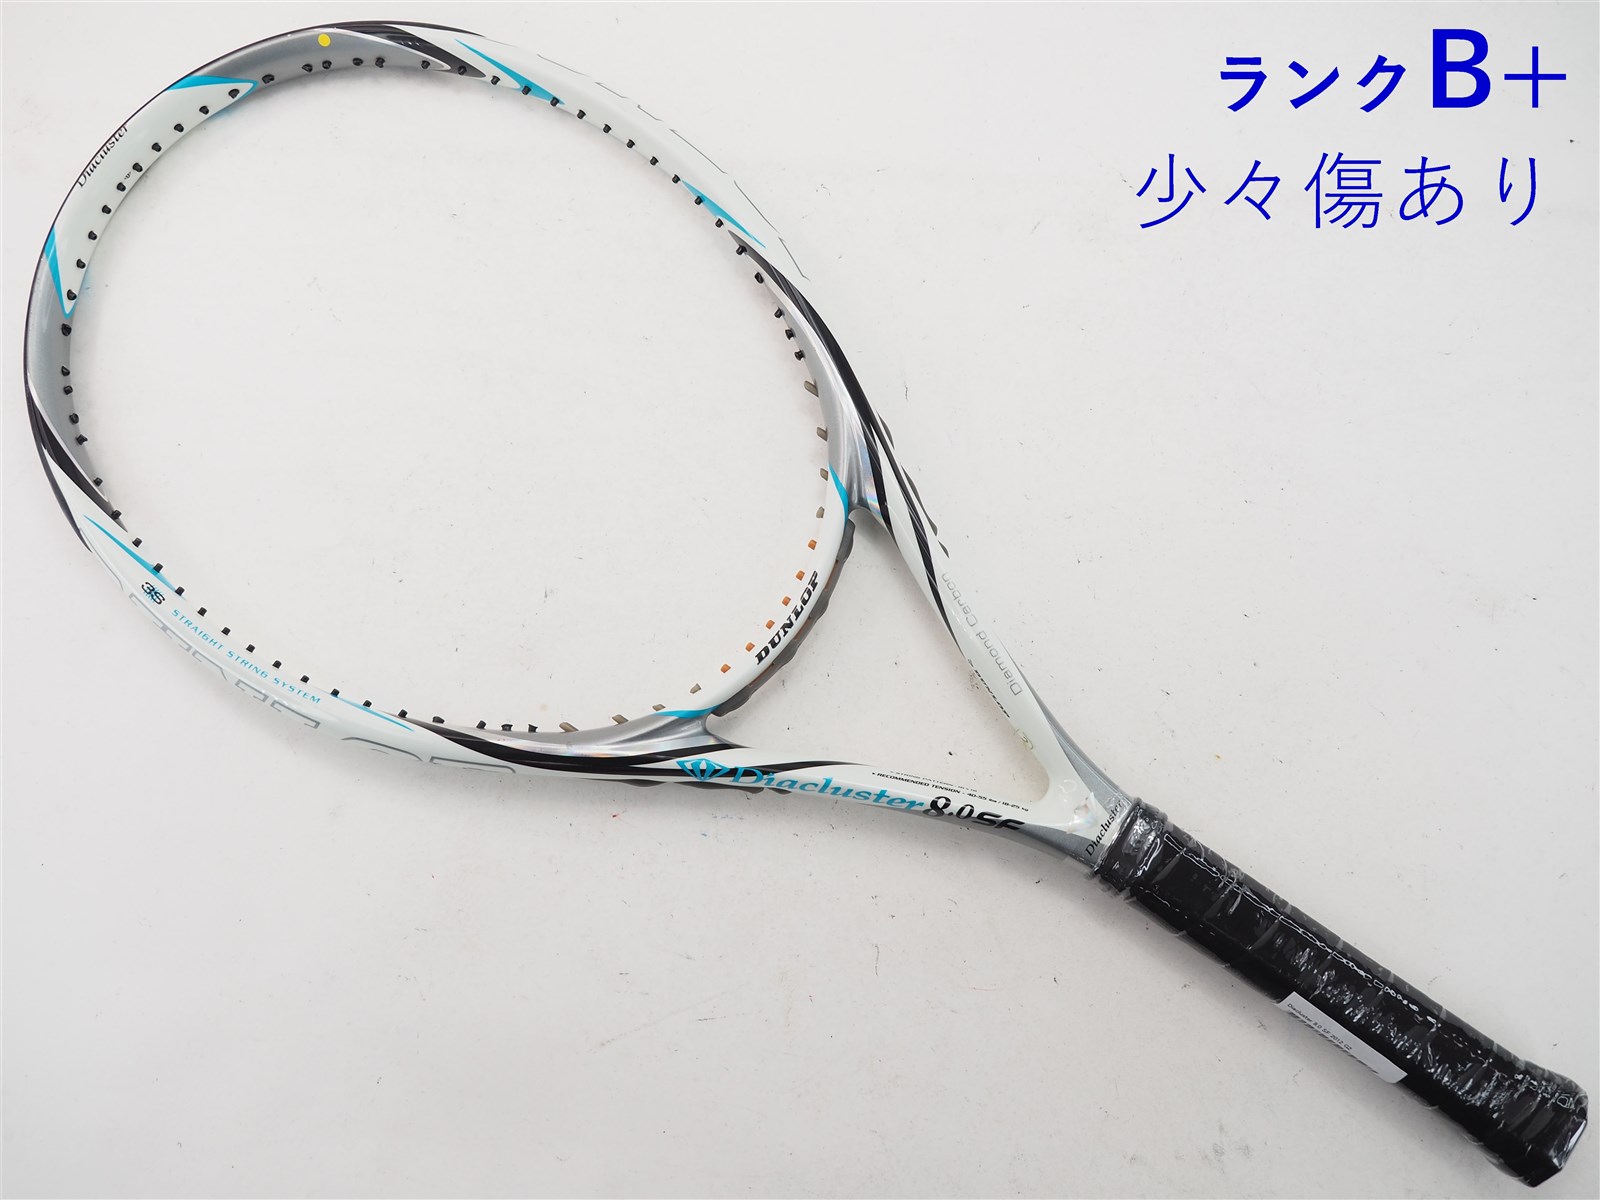 テニスラケット ダンロップ ダイアクラスター 8.0 SF 2012年モデル (G2